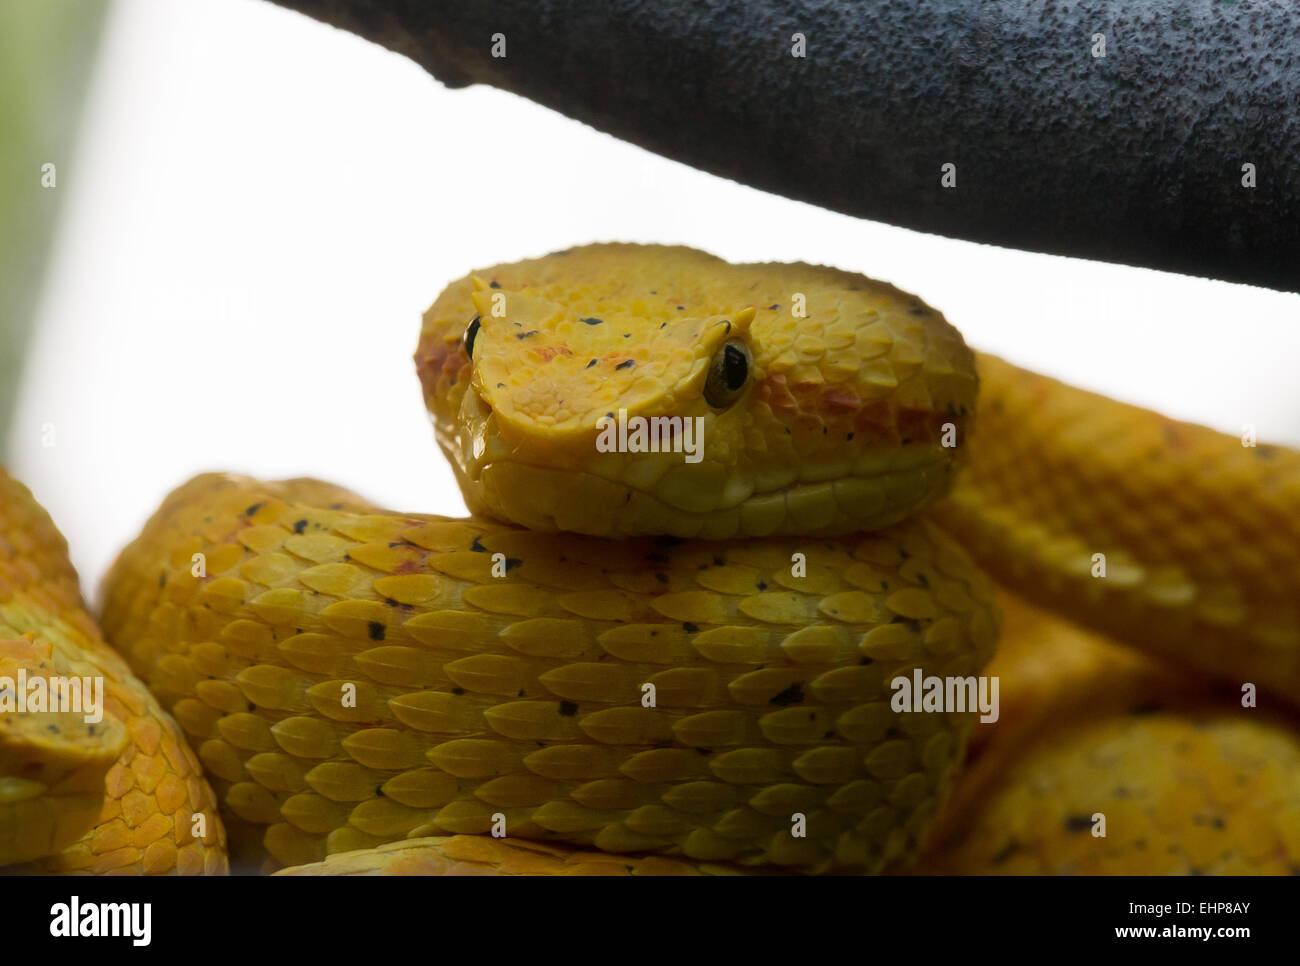 Yellow 'Eyelash' Viper Stock Photo